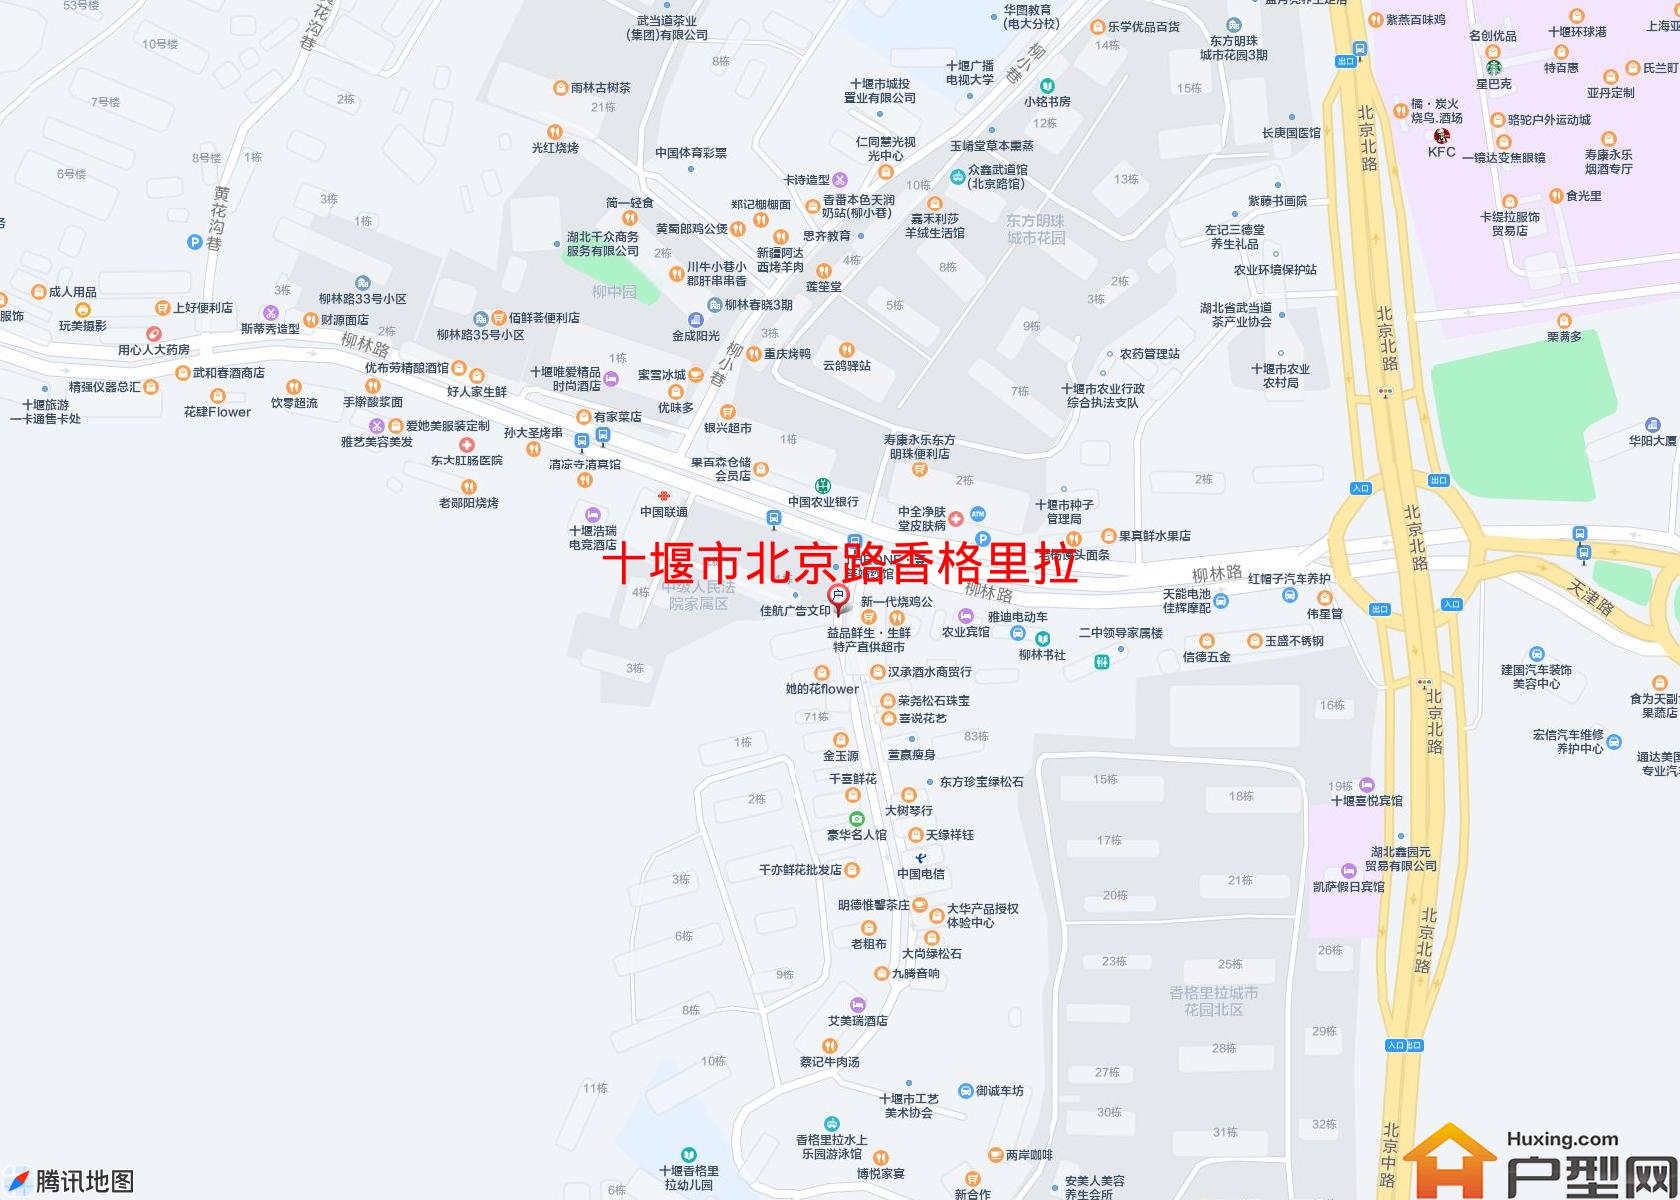 北京路香格里拉小区 - 户型网